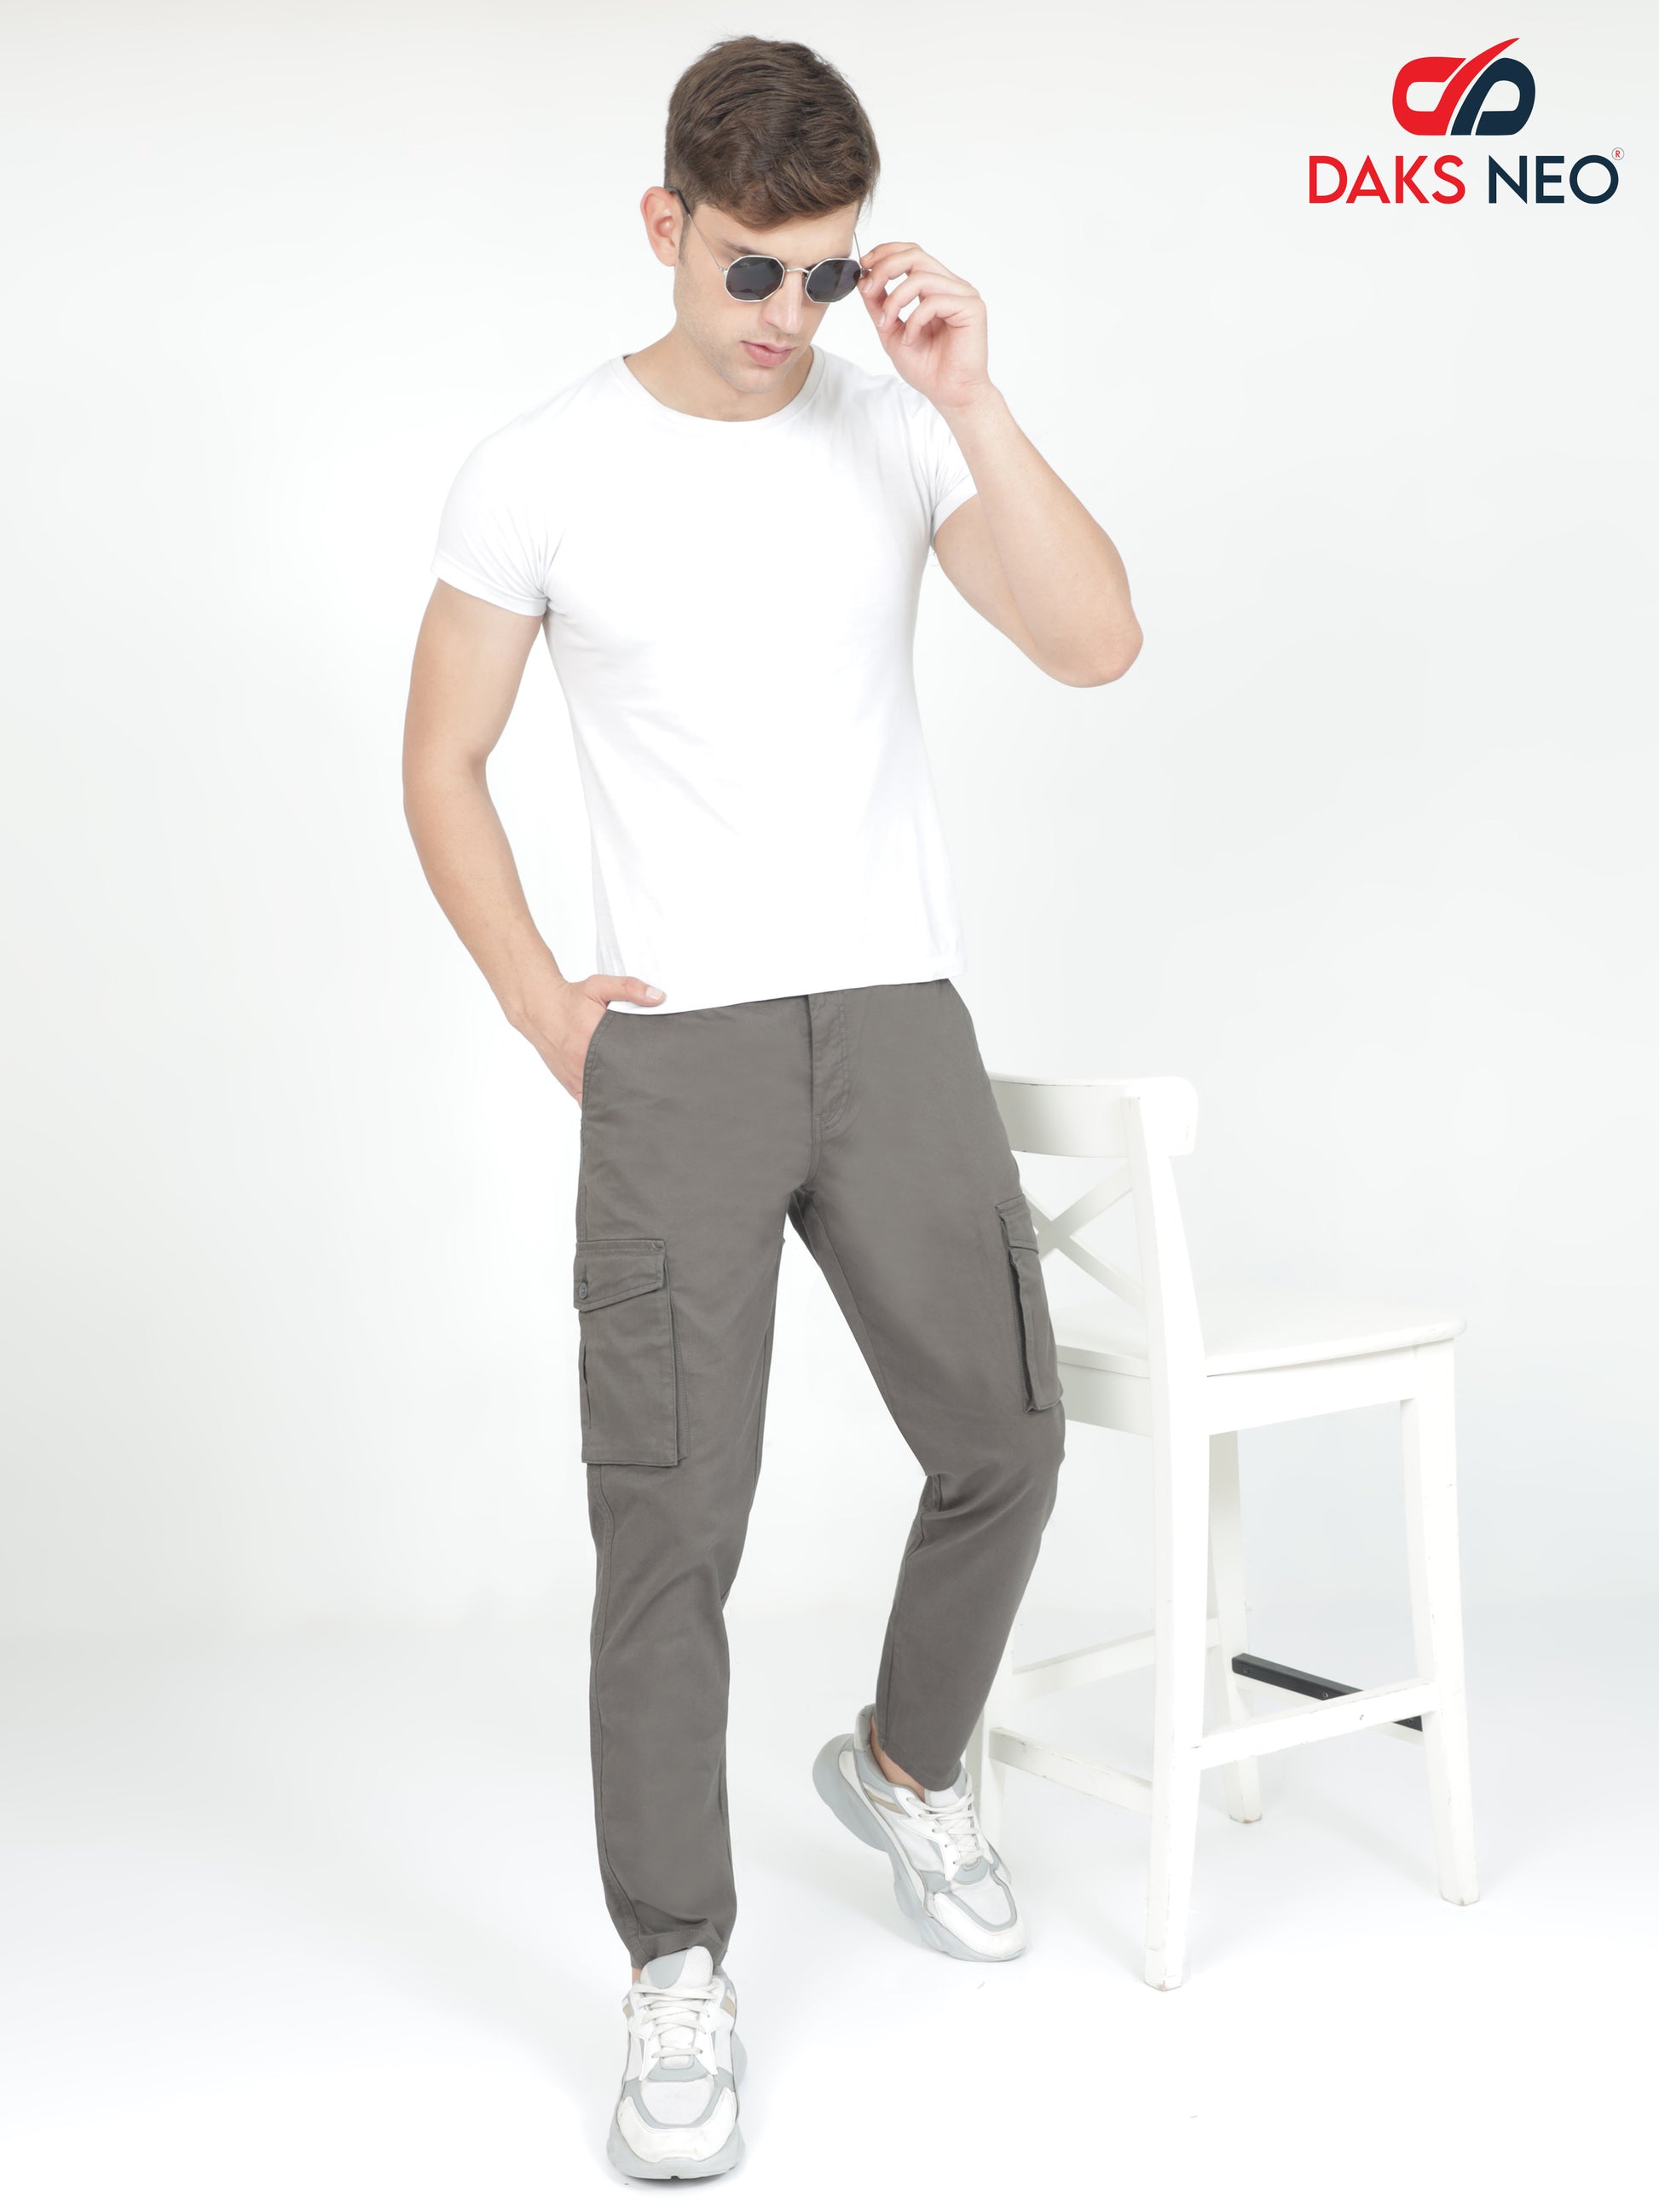 Cargo Pants For Men - Buy Latest Trendy Cargo Pants Online